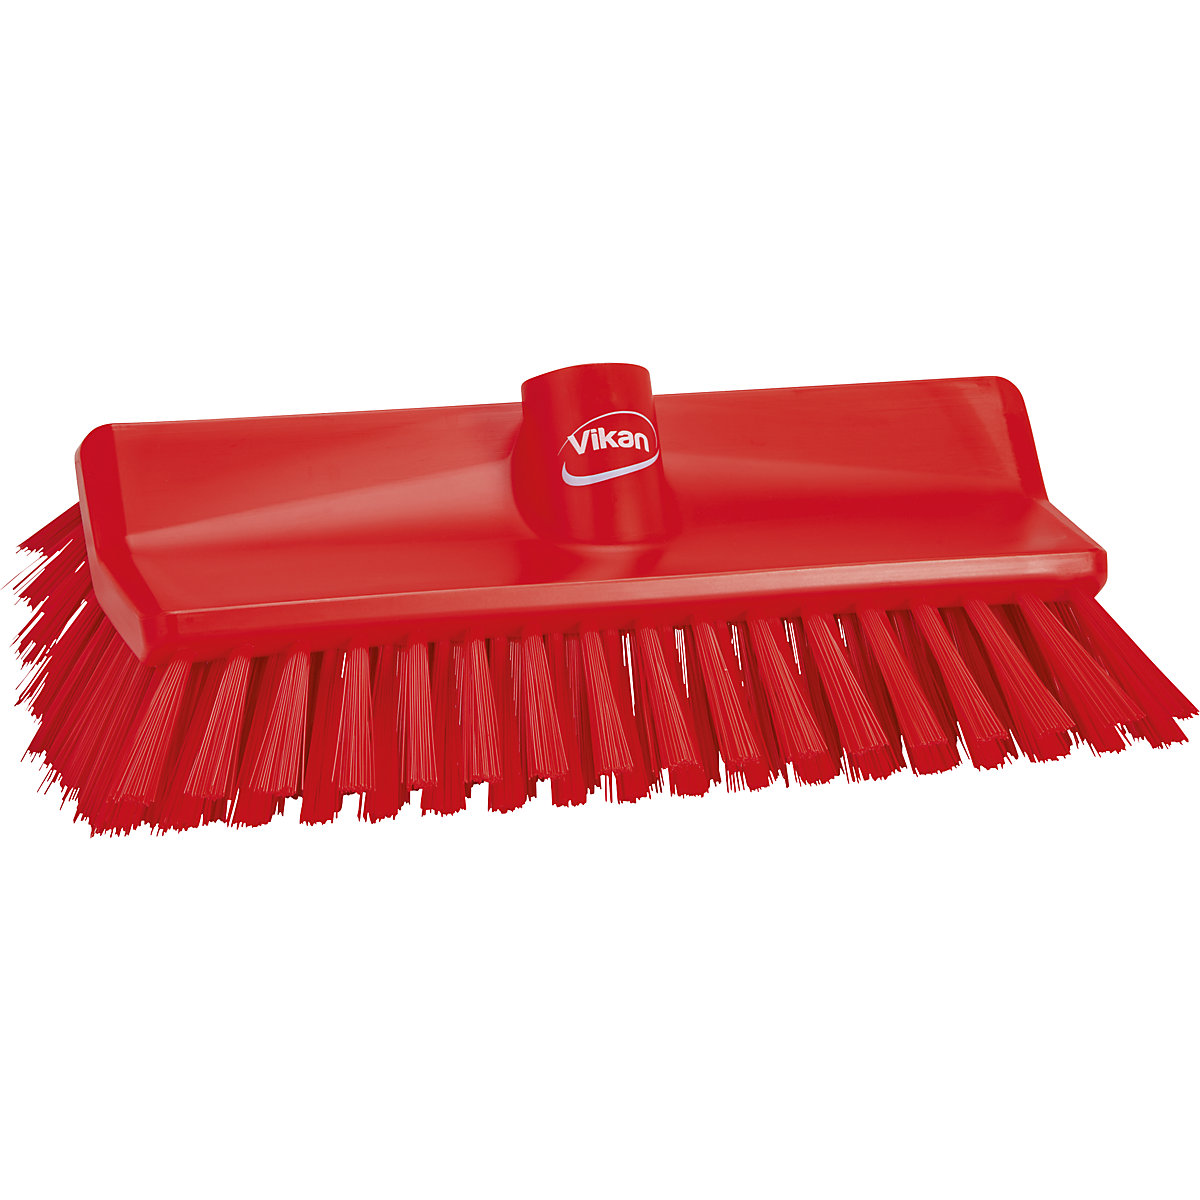 Vikan – High-low brush/corner scrubbing brush, medium, pack of 10, red